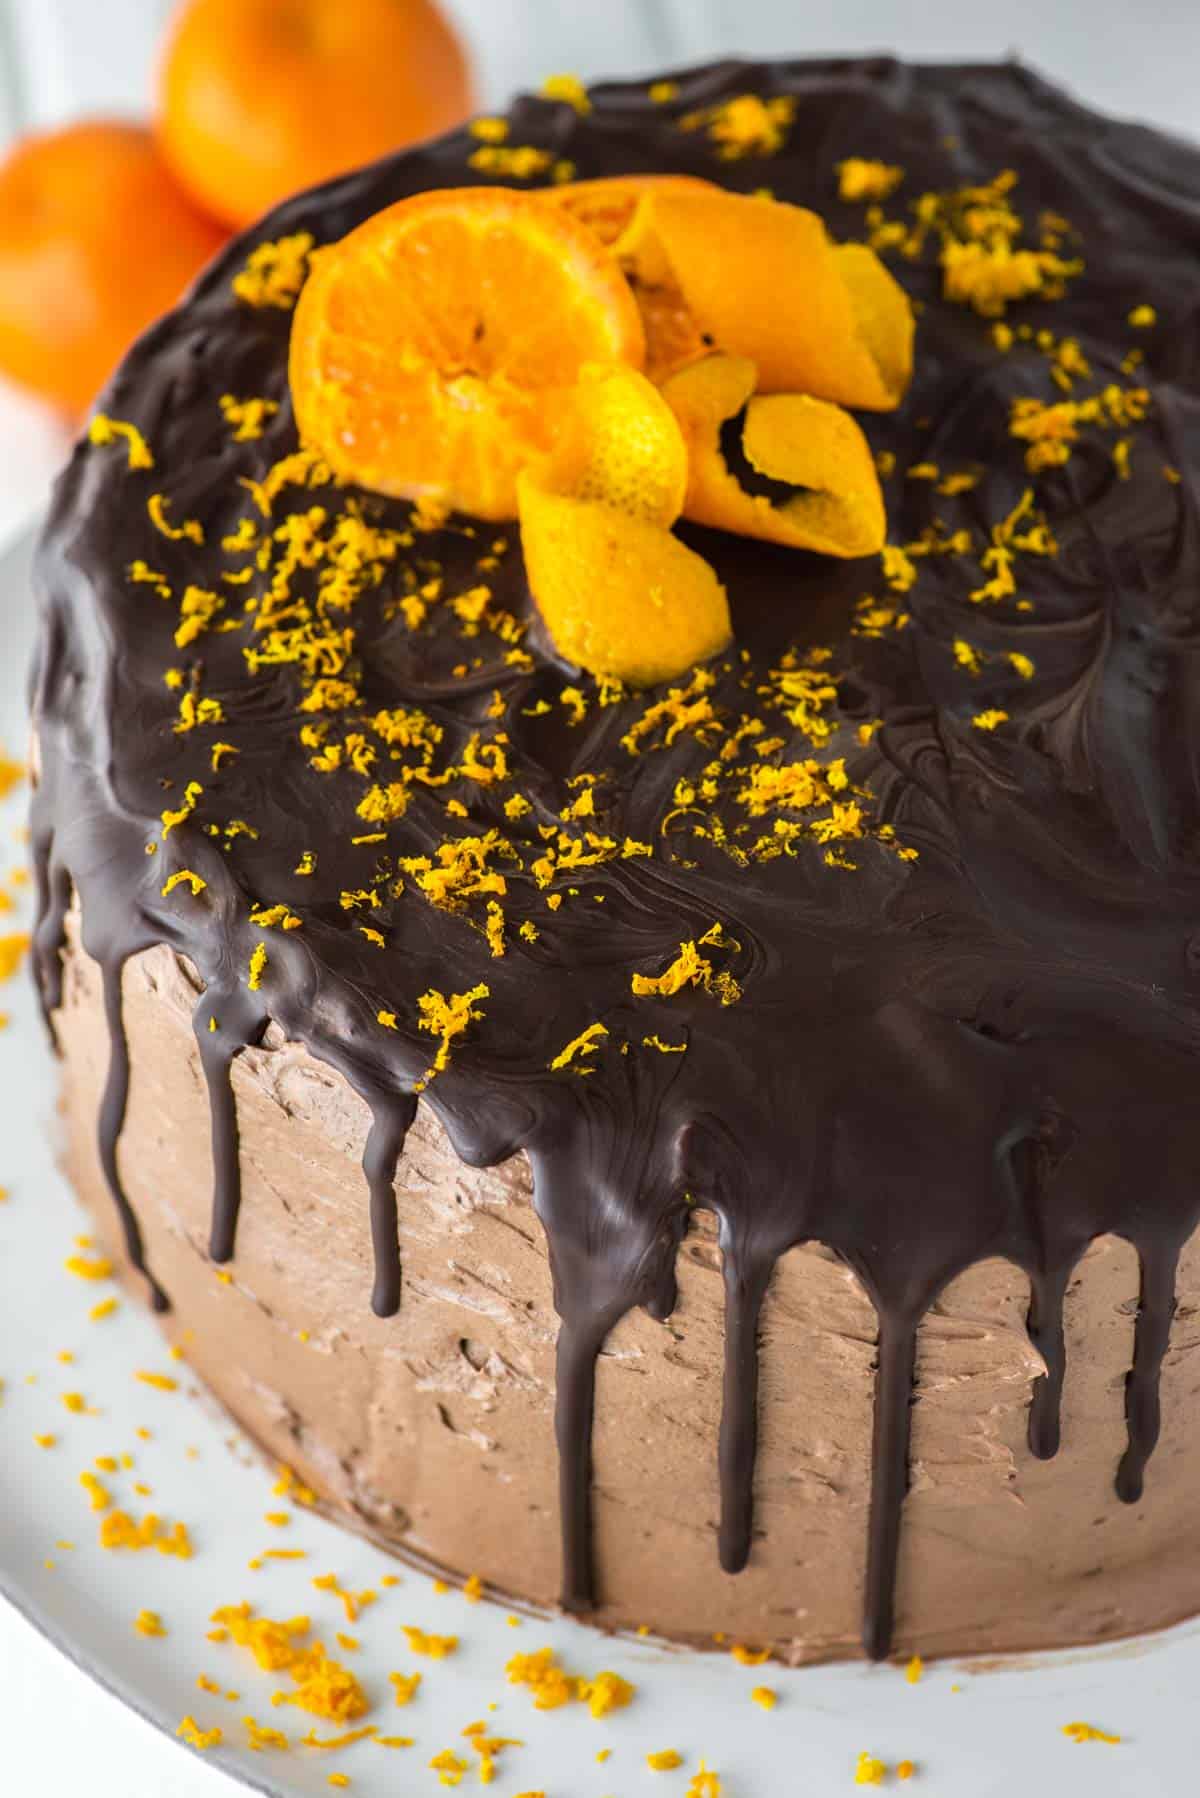 Flourless chocolate orange cake recipe - Recipes - delicious.com.au